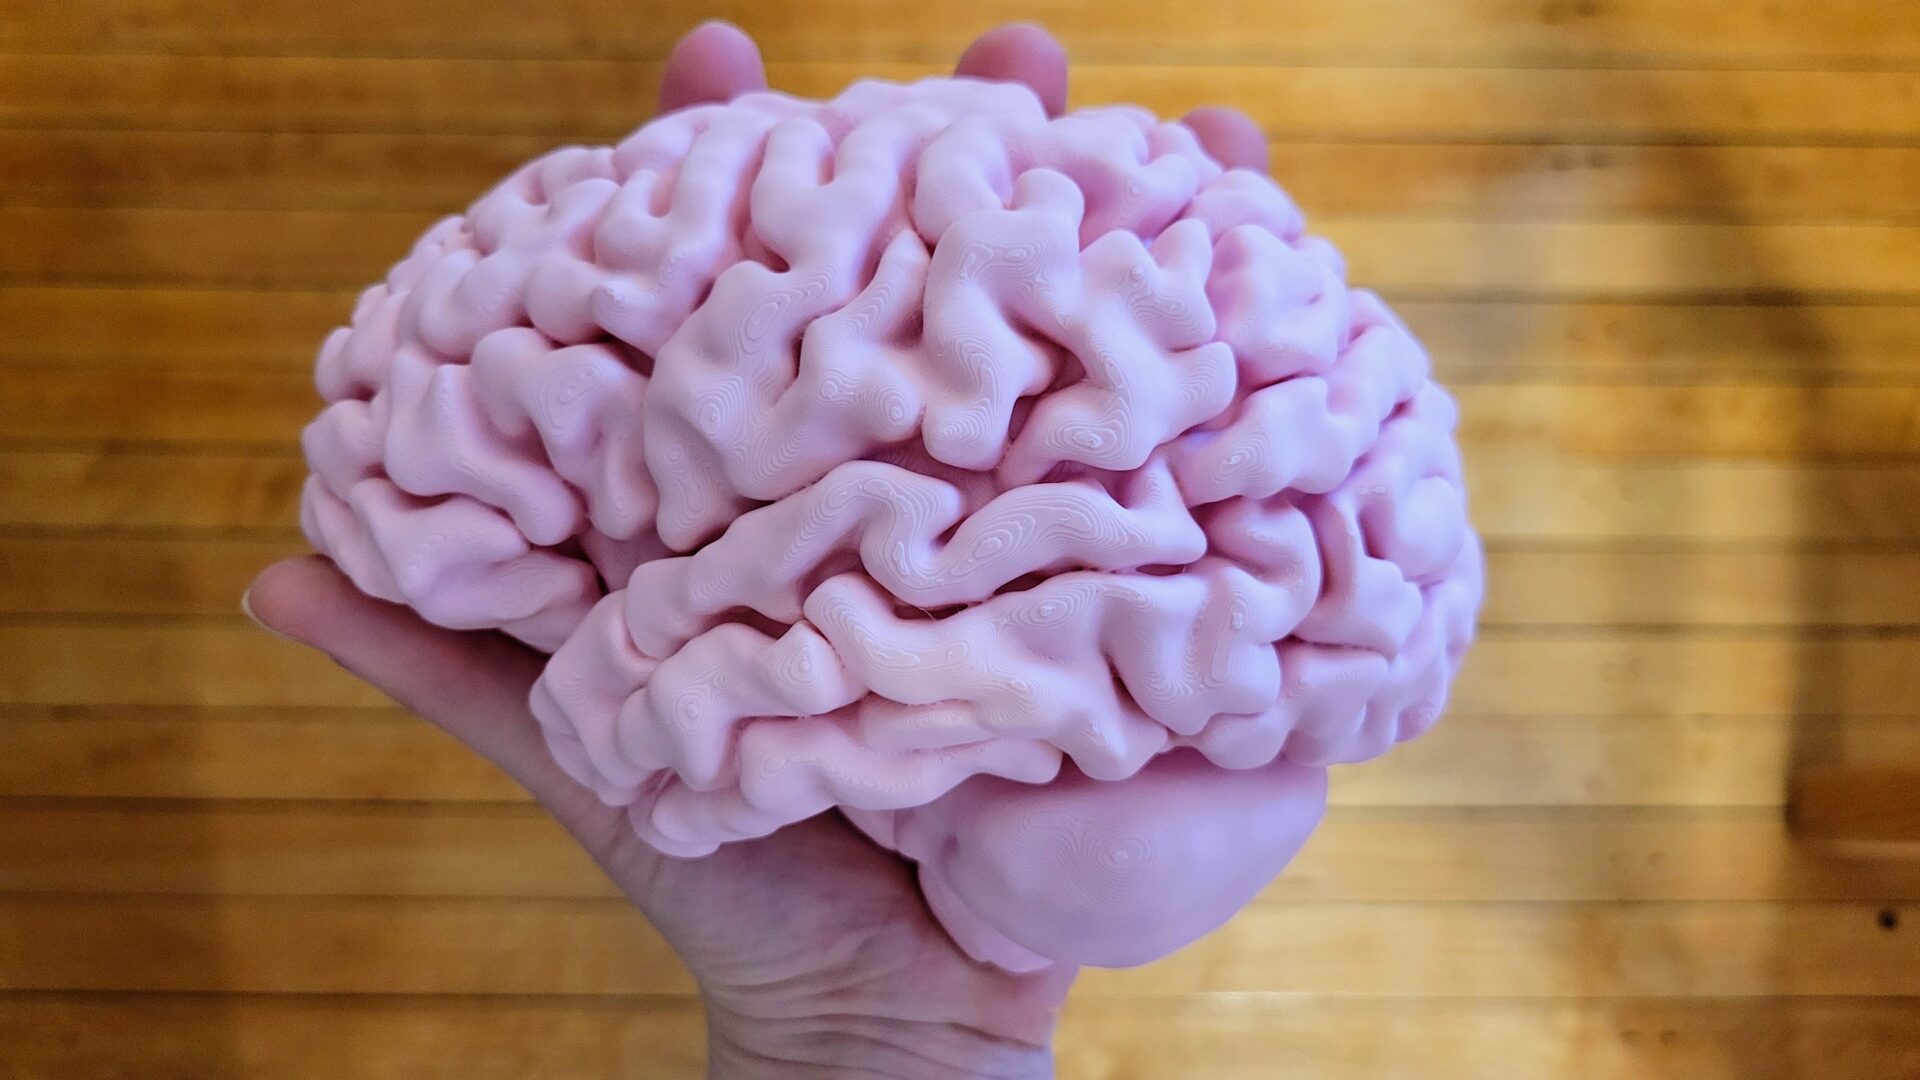 Full-sized brain hemisphere finished